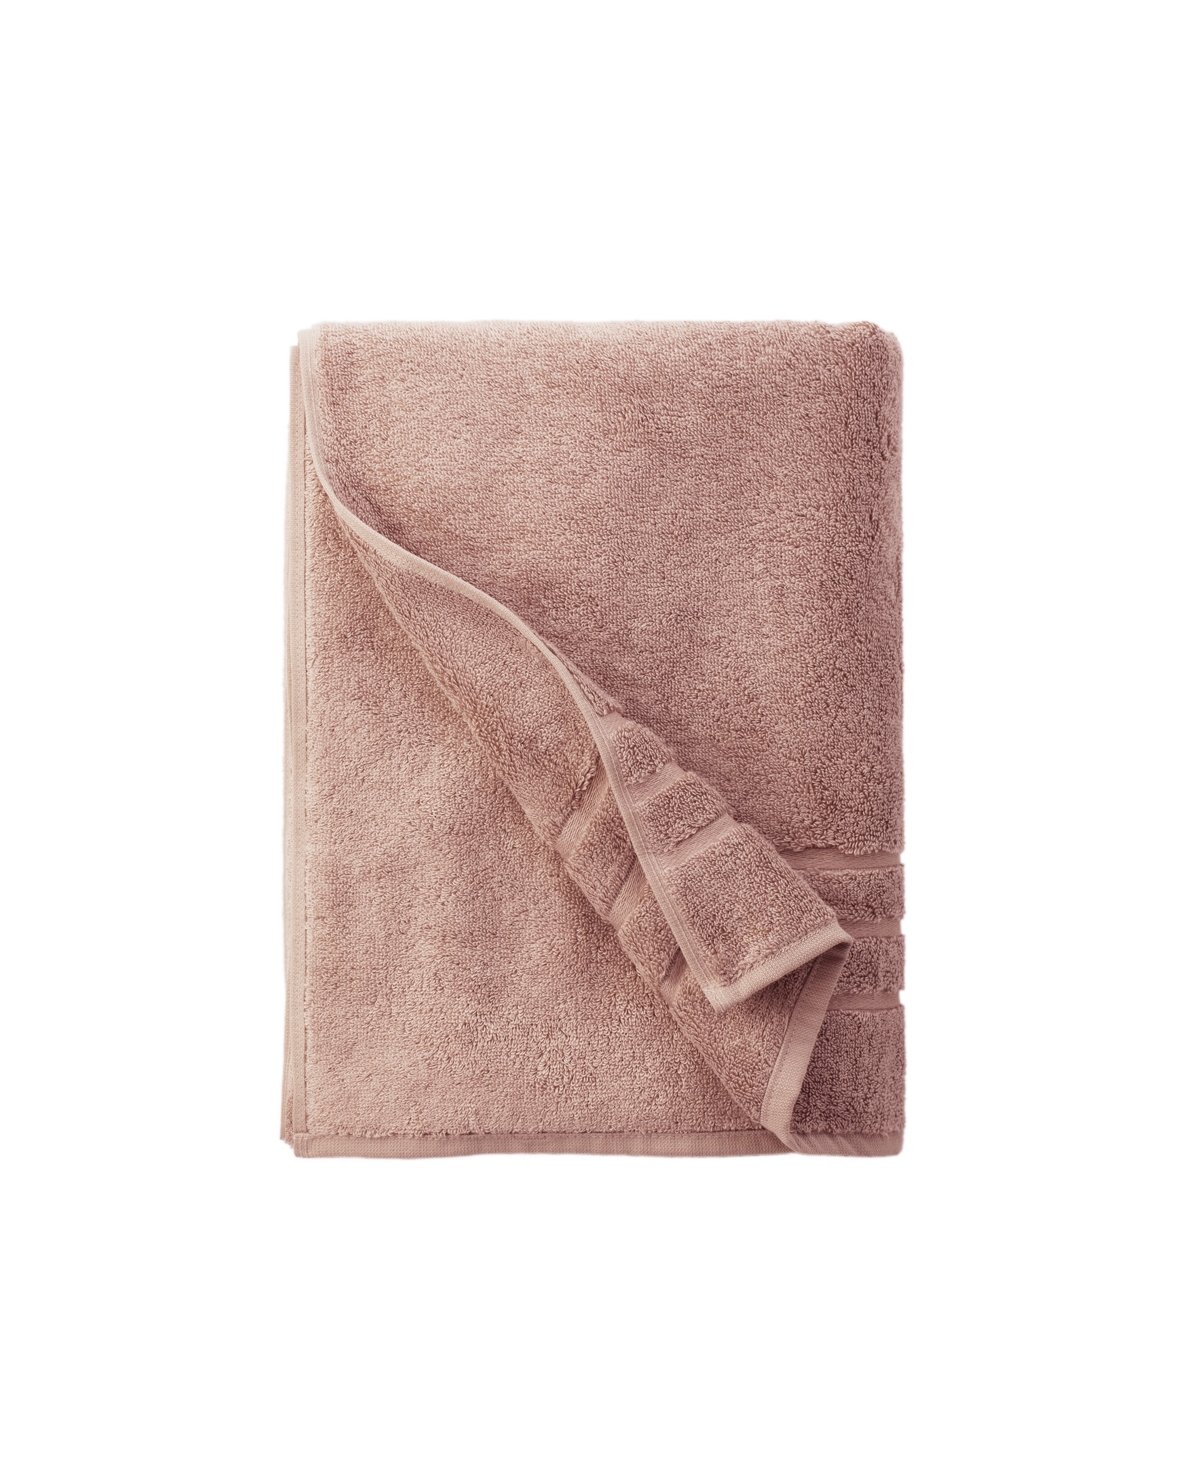 Cariloha 70" X 40" Viscose Bath Sheet In Blush